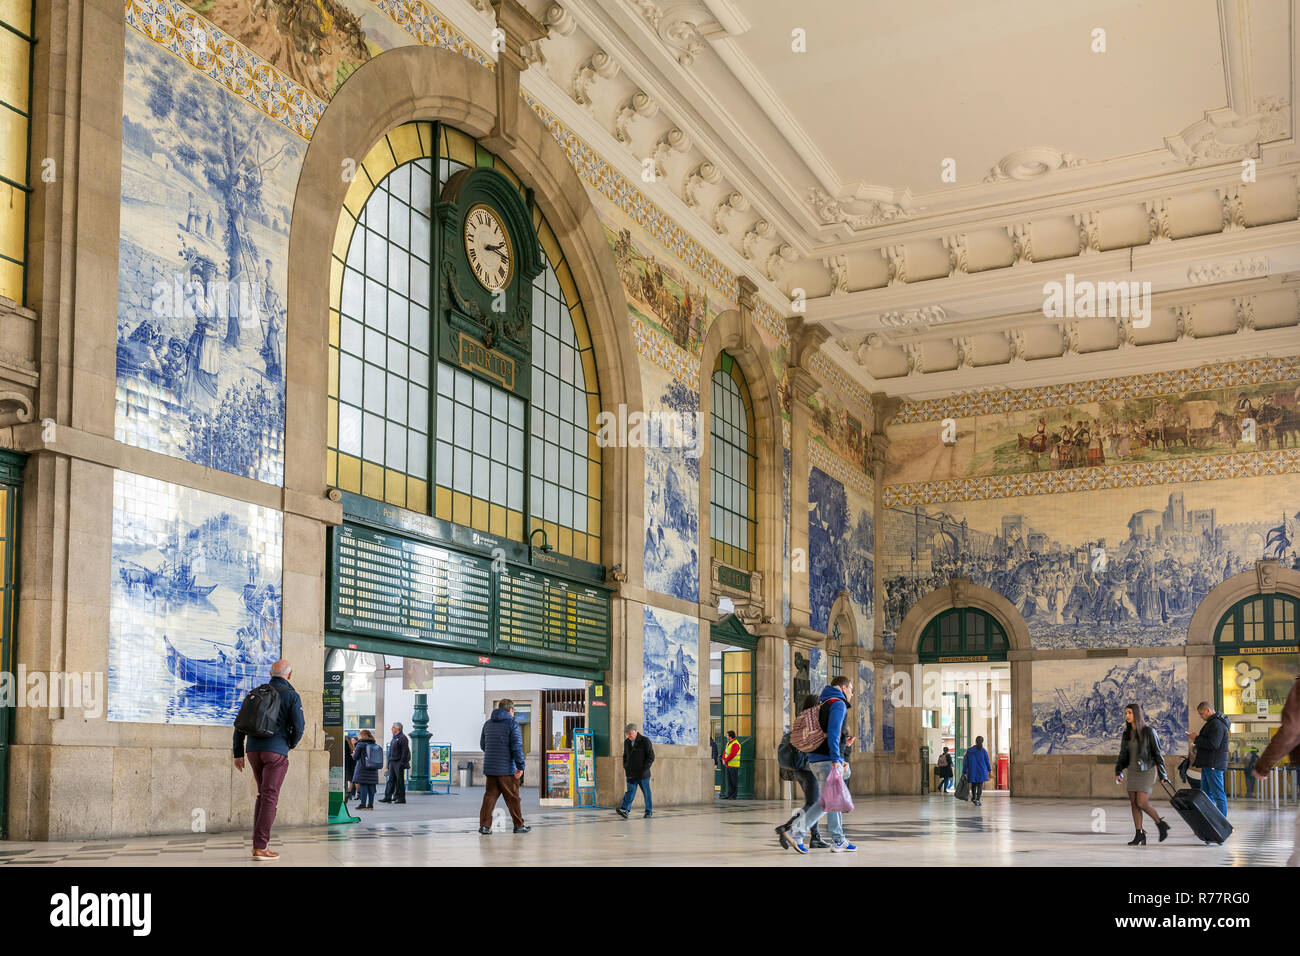 Porto, Portugal - 12 janvier 2018 : les gens dans le vestibule de la gare de São Bento. Il est décoré d'environ 20 000 tuiles azulejo, dat Banque D'Images